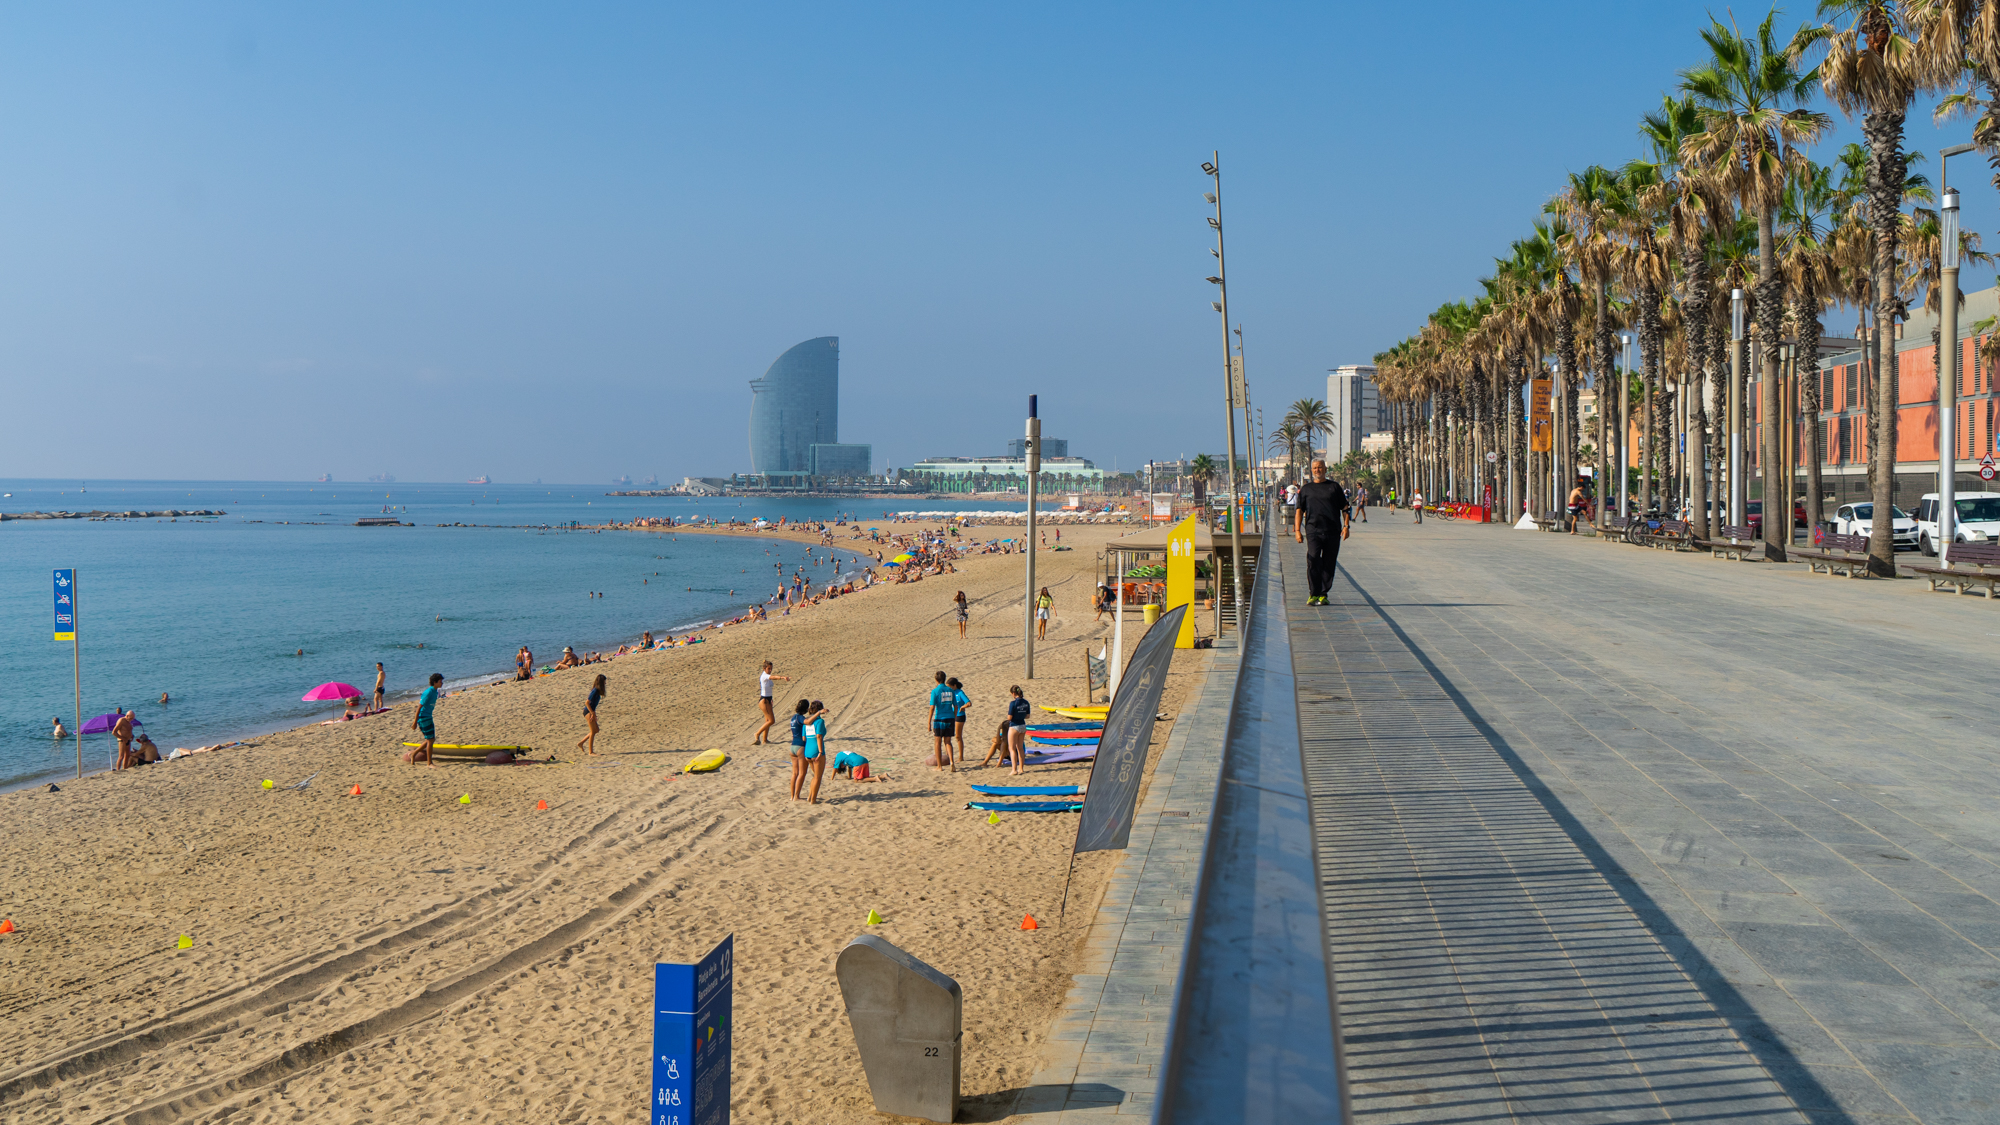 Plage mer Barceloneta promenade bleu palmiers sable vacances ete tourisme Photo Clementine Laurent Equinox 1